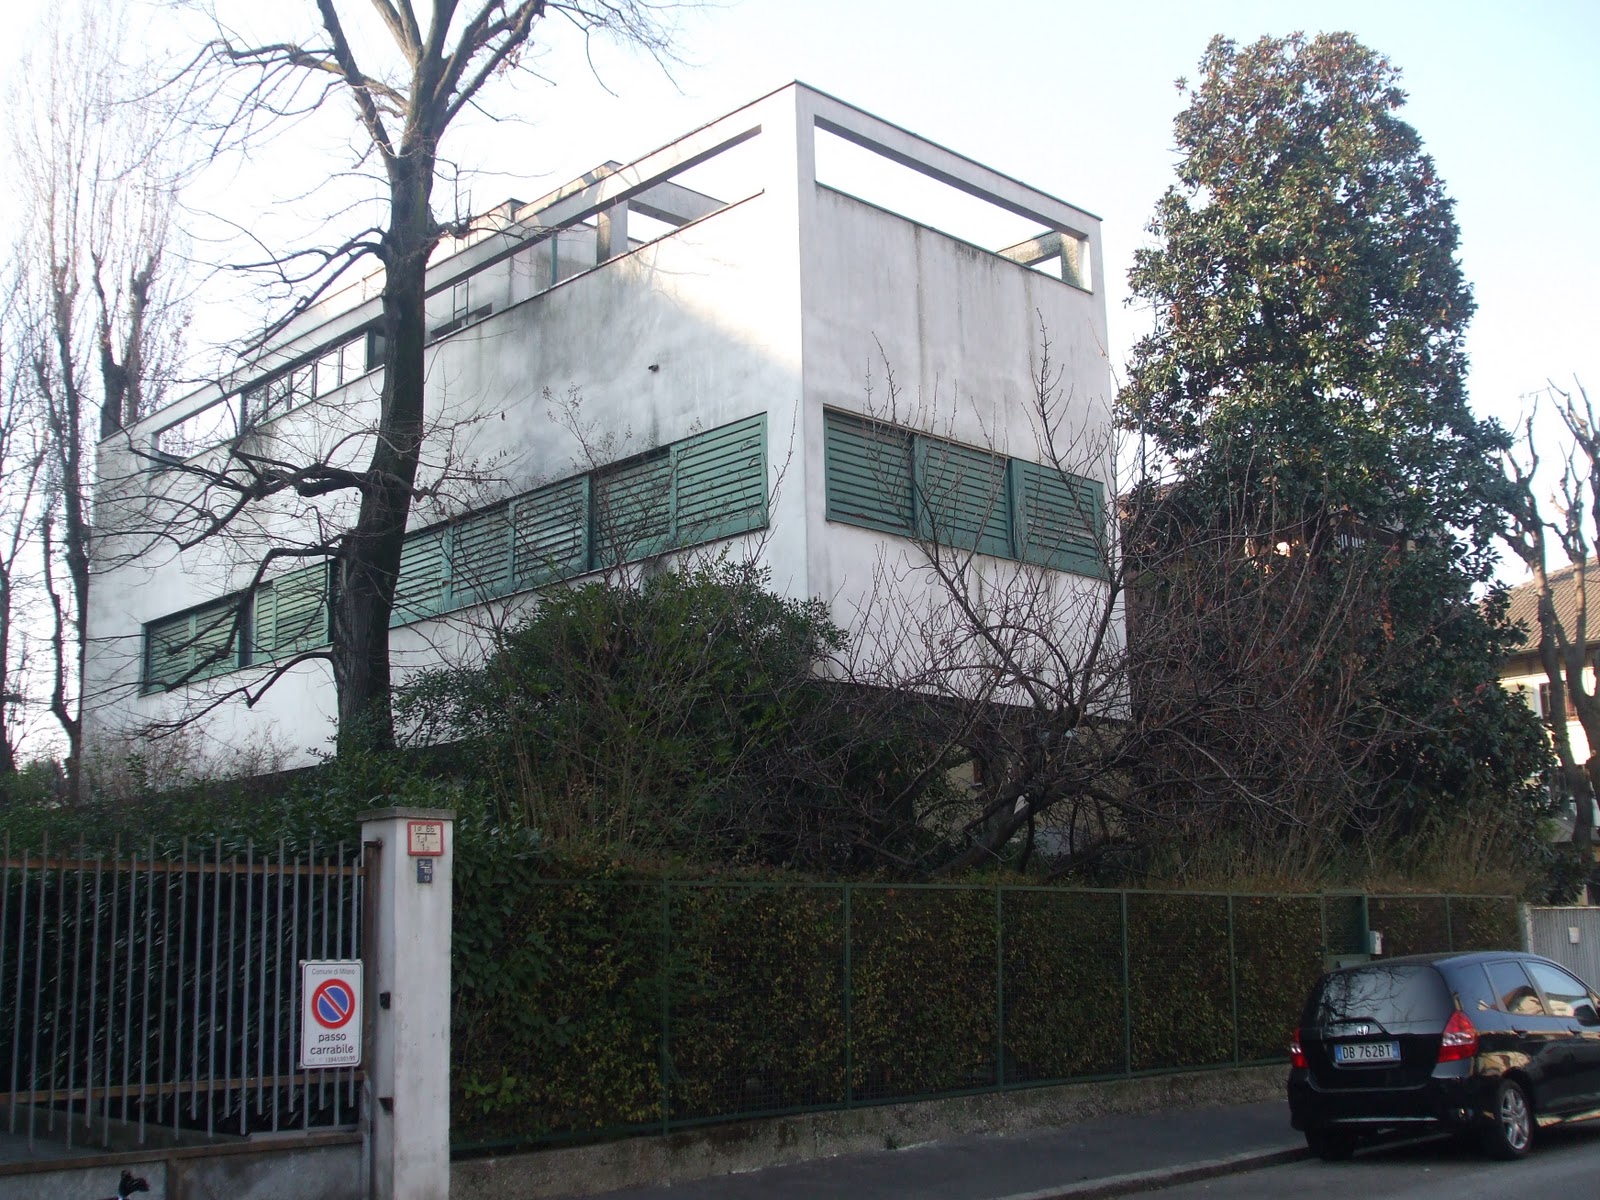 Villa Figini dell'architetto Luigi Figini, detta anche la "casa palafitta", visibile ancora oggi al villaggio dei giornalisti a Milano